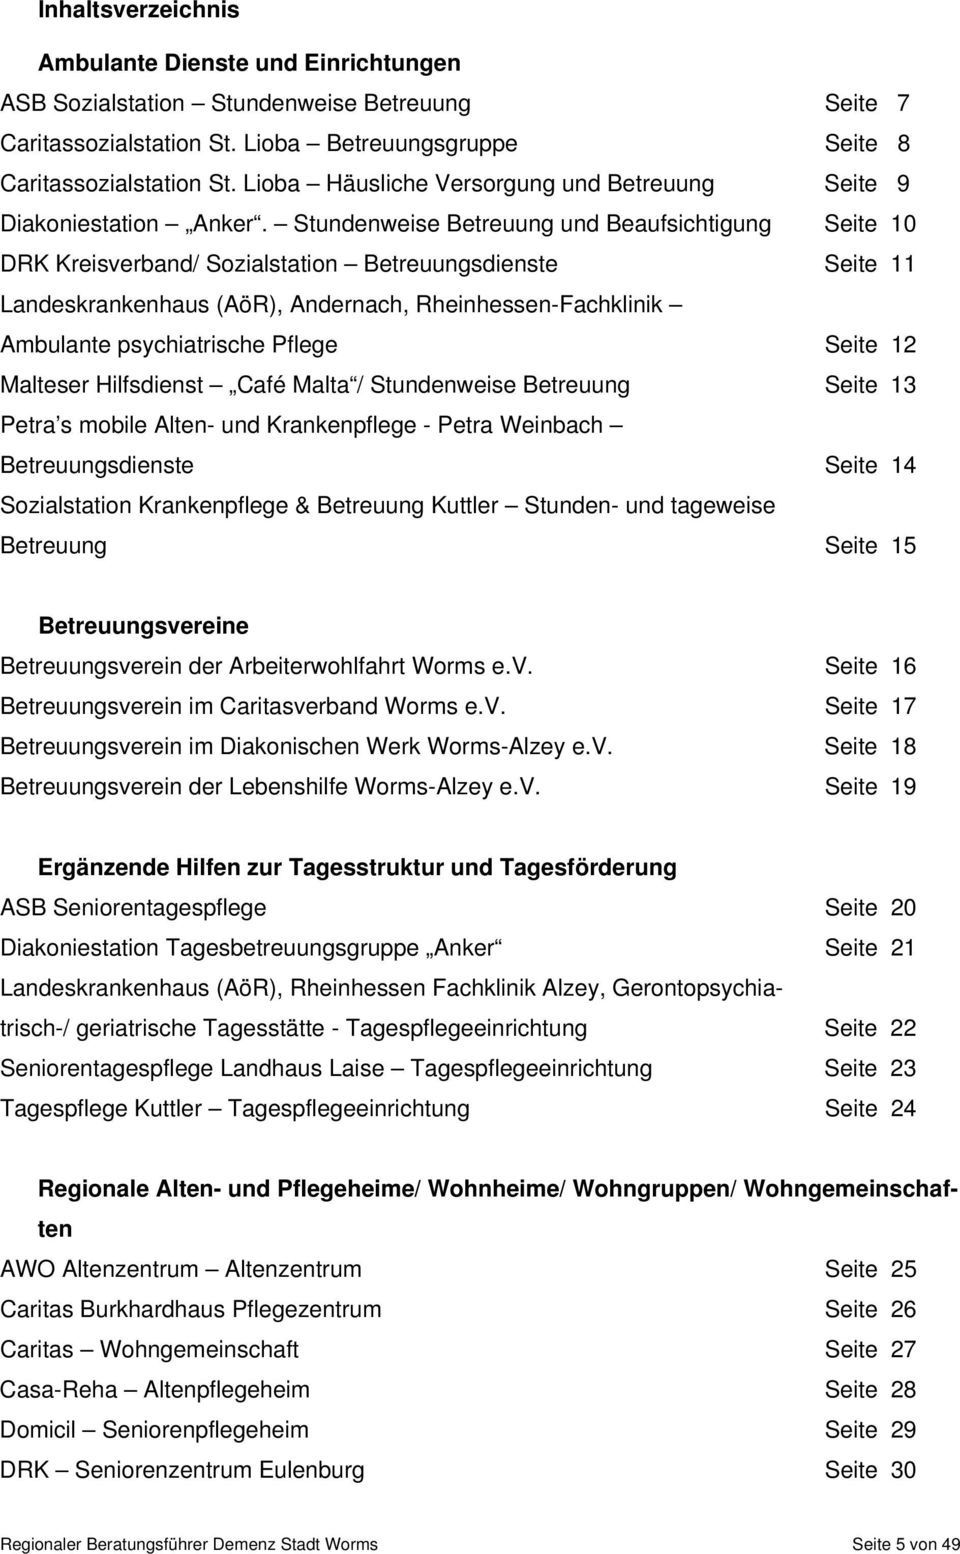 Stundenweise Betreuung und Beaufsichtigung Seite 10 DRK Kreisverband/ Sozialstation Betreuungsdienste Seite 11 Landeskrankenhaus (AöR), Andernach, Rheinhessen-Fachklinik Ambulante psychiatrische